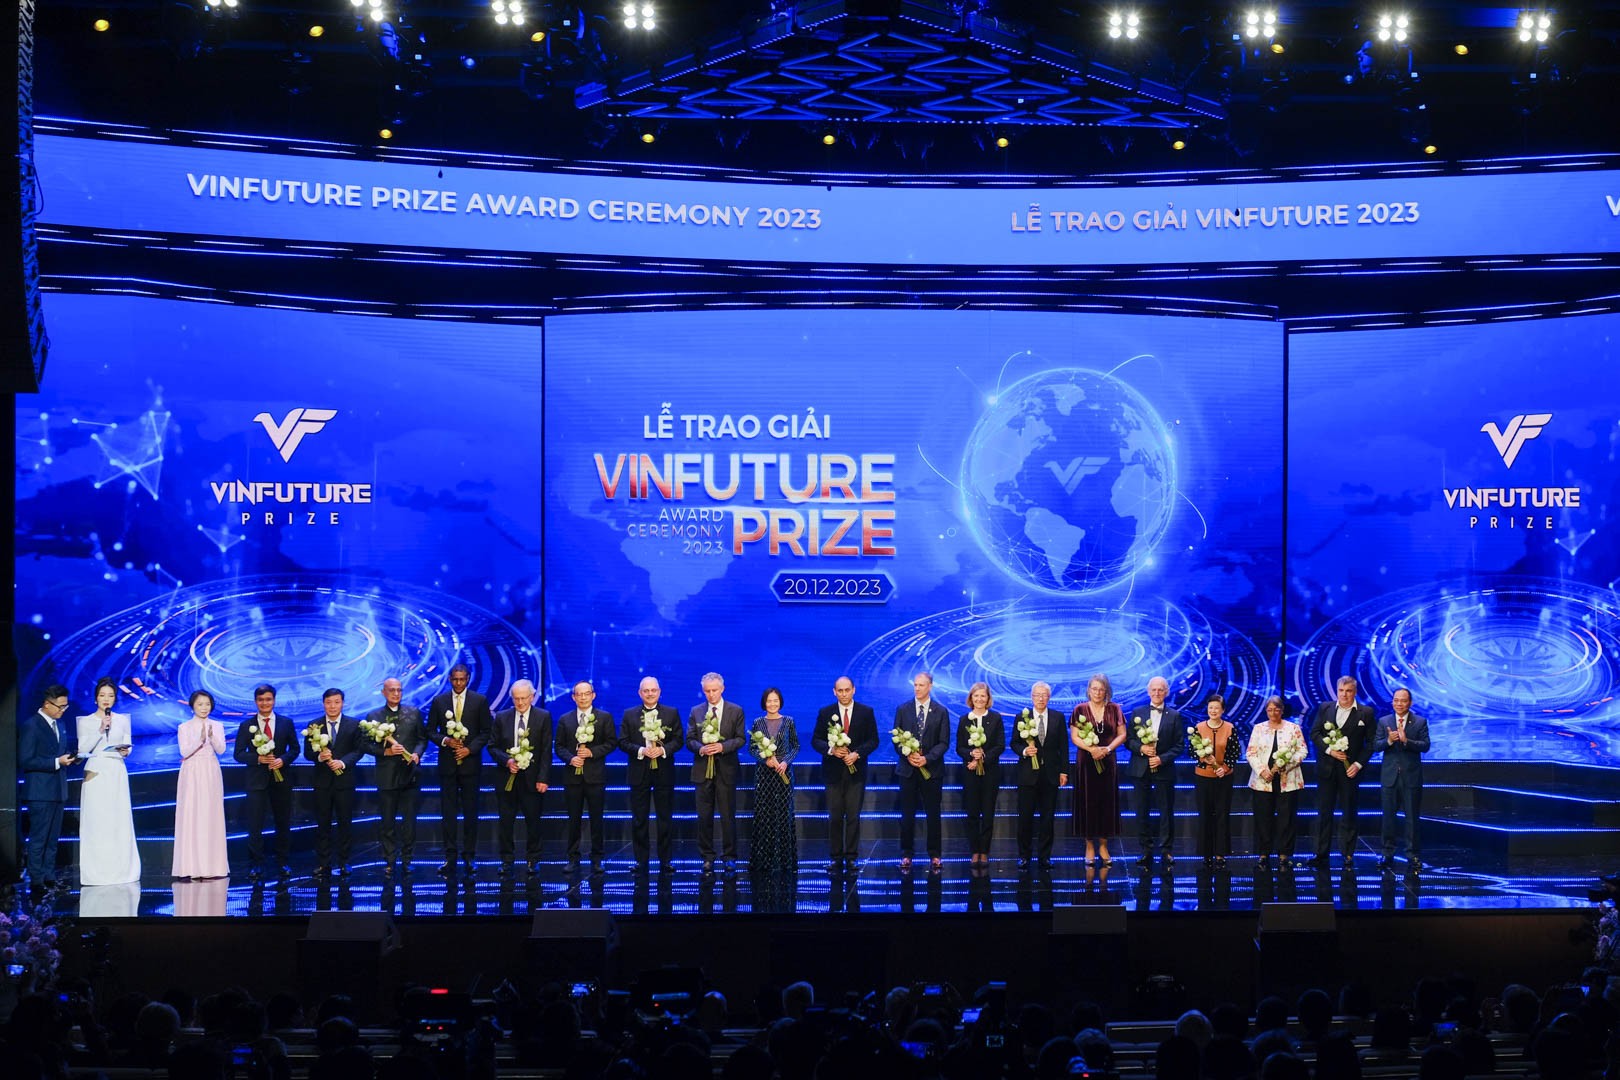 Giải thưởng VinFuture 2023 vinh danh 4 công trình khoa học ‘Chung sức toàn cầu’ ảnh 4